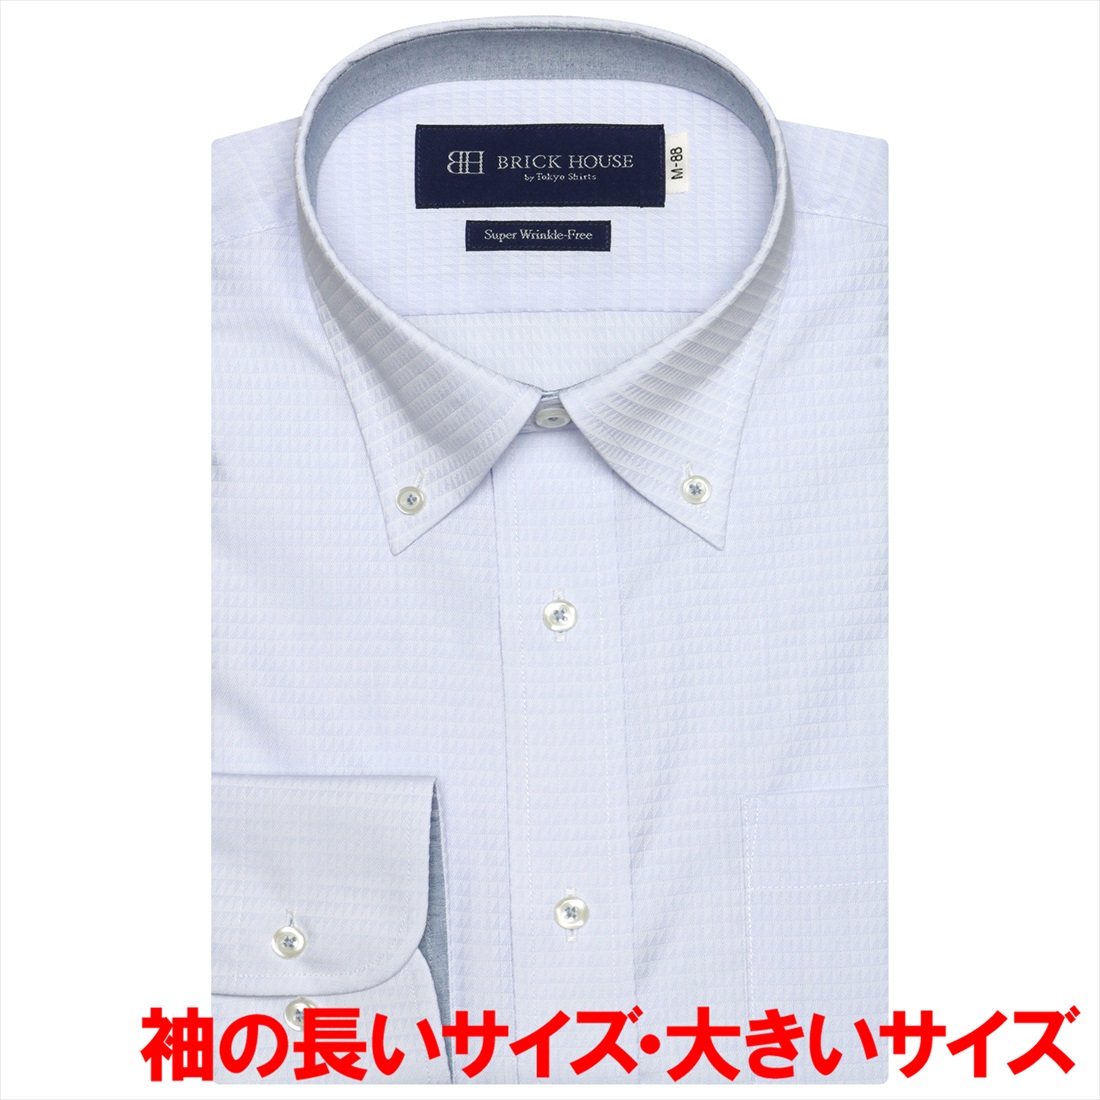 【イエロー】(M)【超形態安定】 ボタンダウンカラー 長袖 ワイシャツ